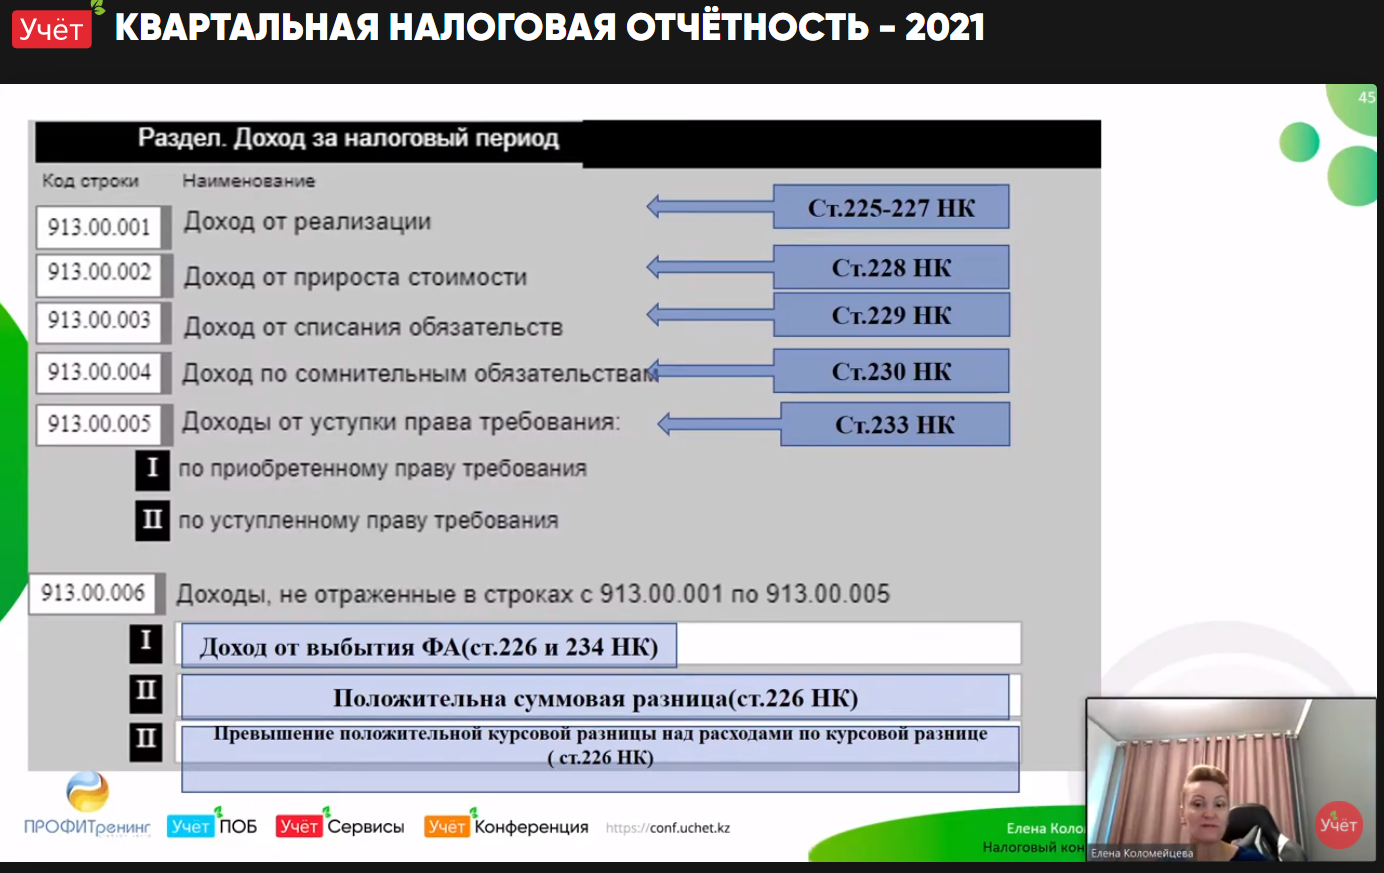 Онлайн-интенсив "Квартальная отчетность 2021" ФНО 913.00